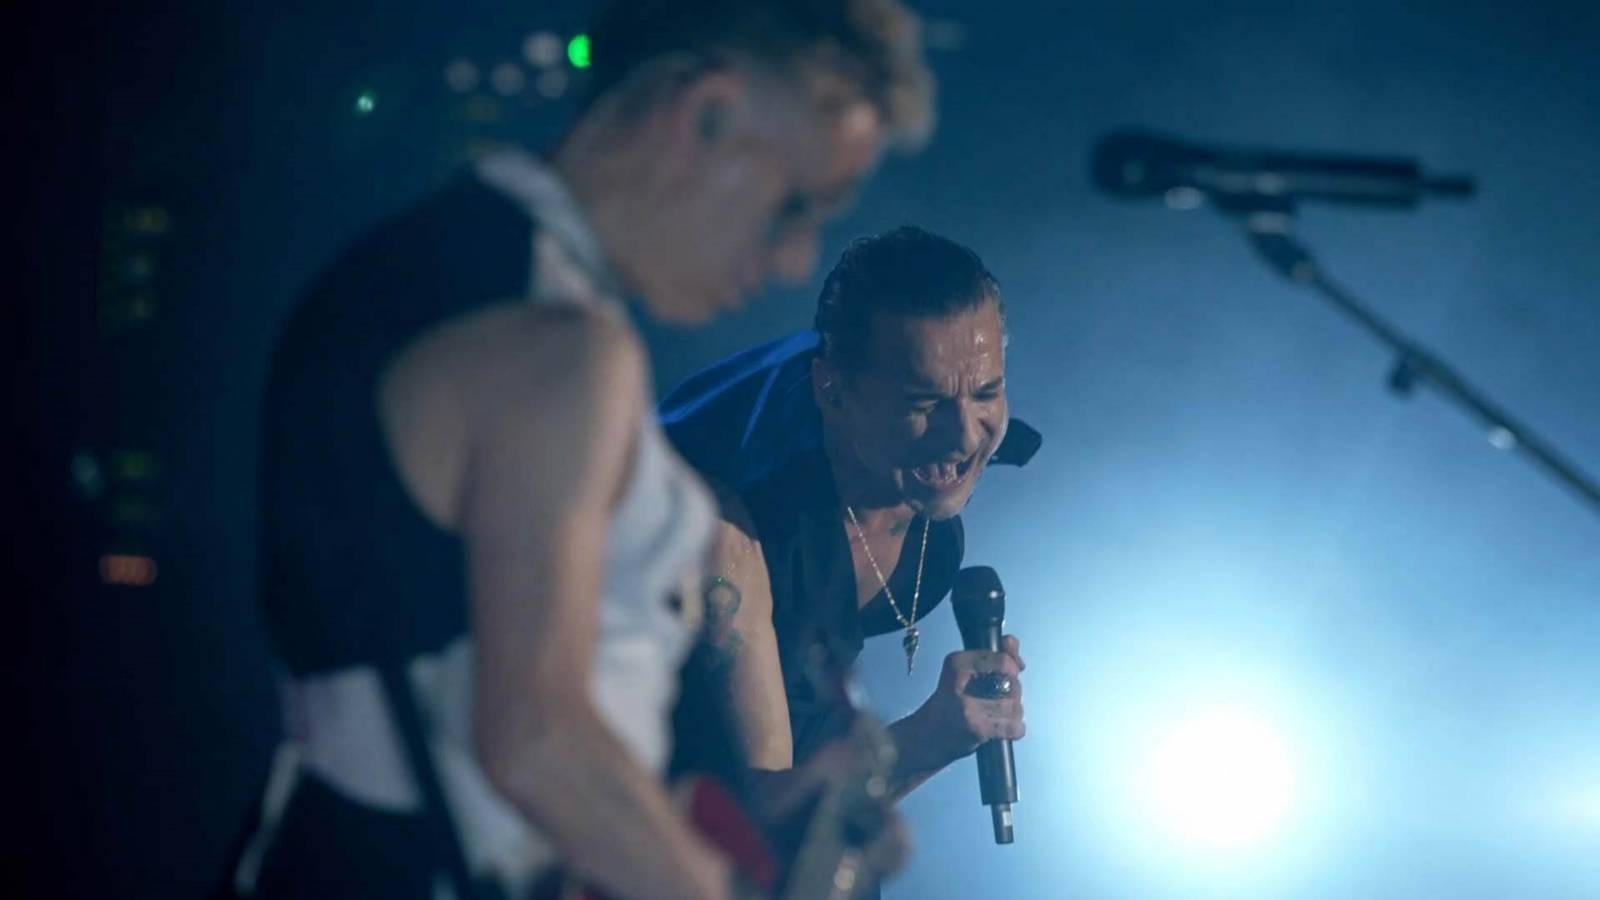 RECENZE: Náboženství jménem Depeche Mode ve filmu, který fanoušky dojme k slzám